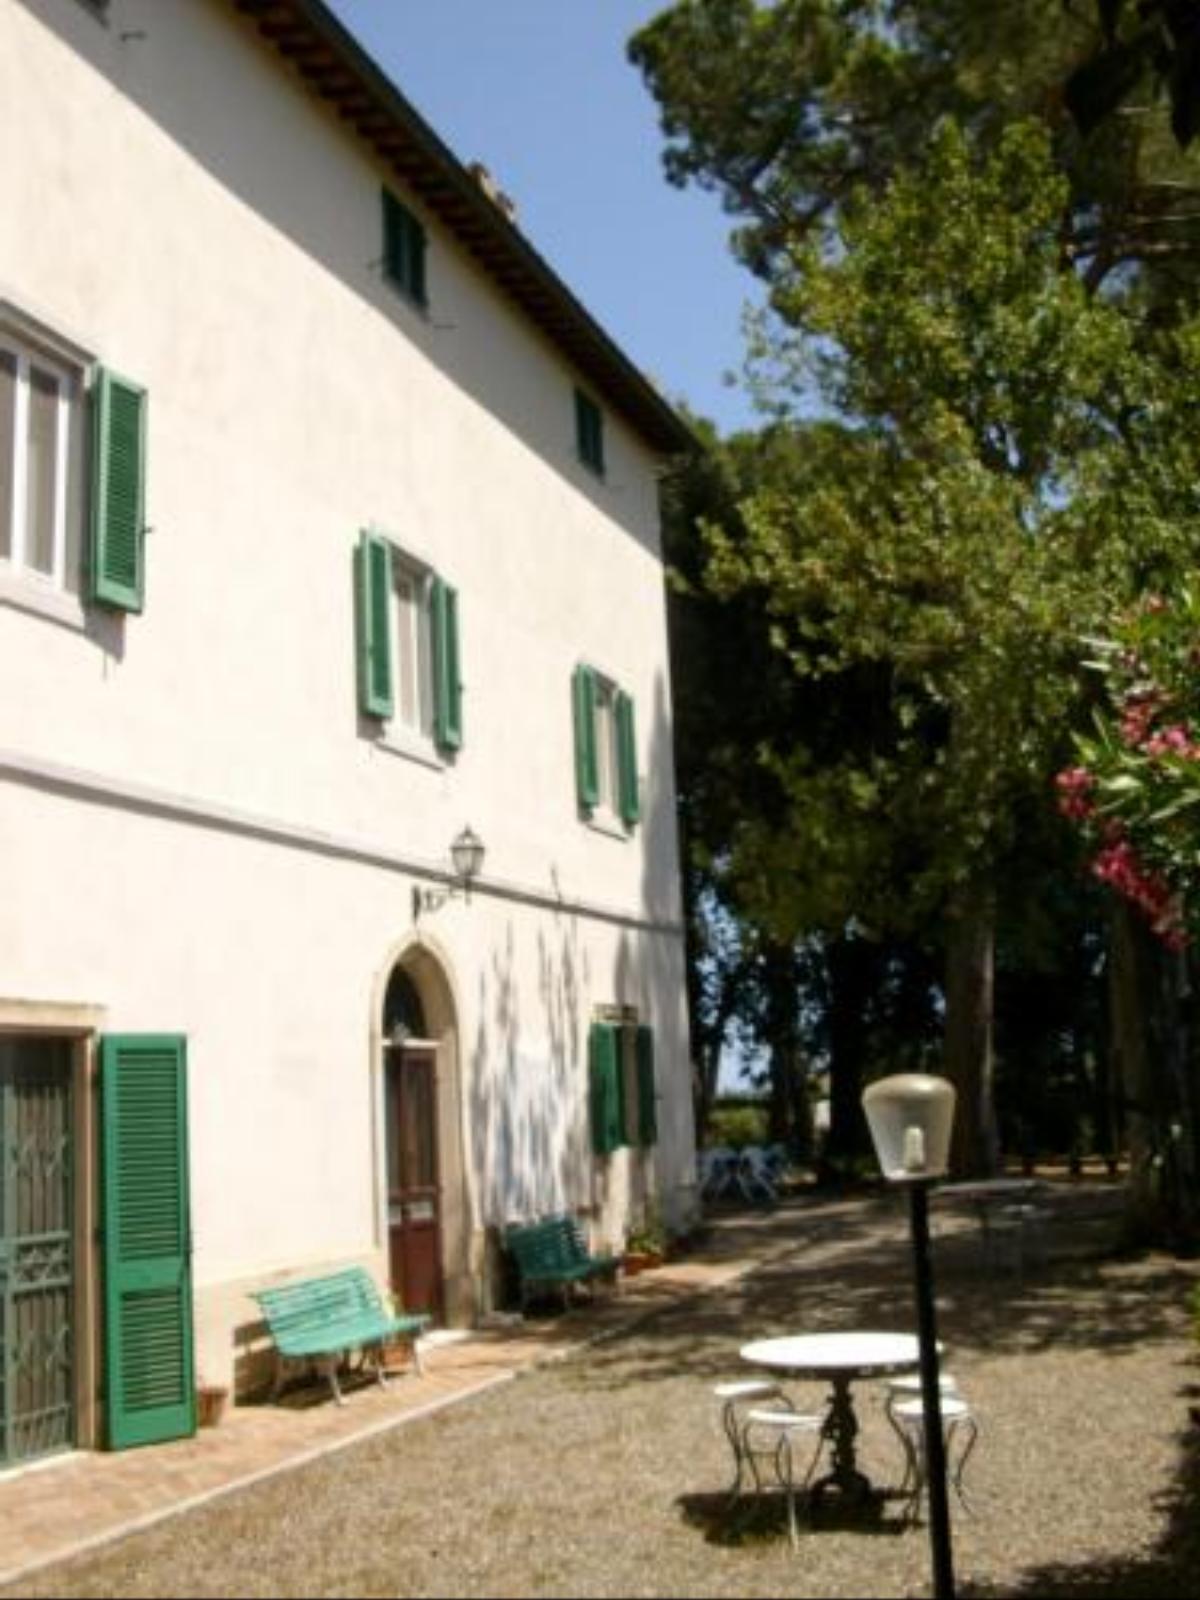 Case Vacanze Odifredi Hotel Collemezzano Italy